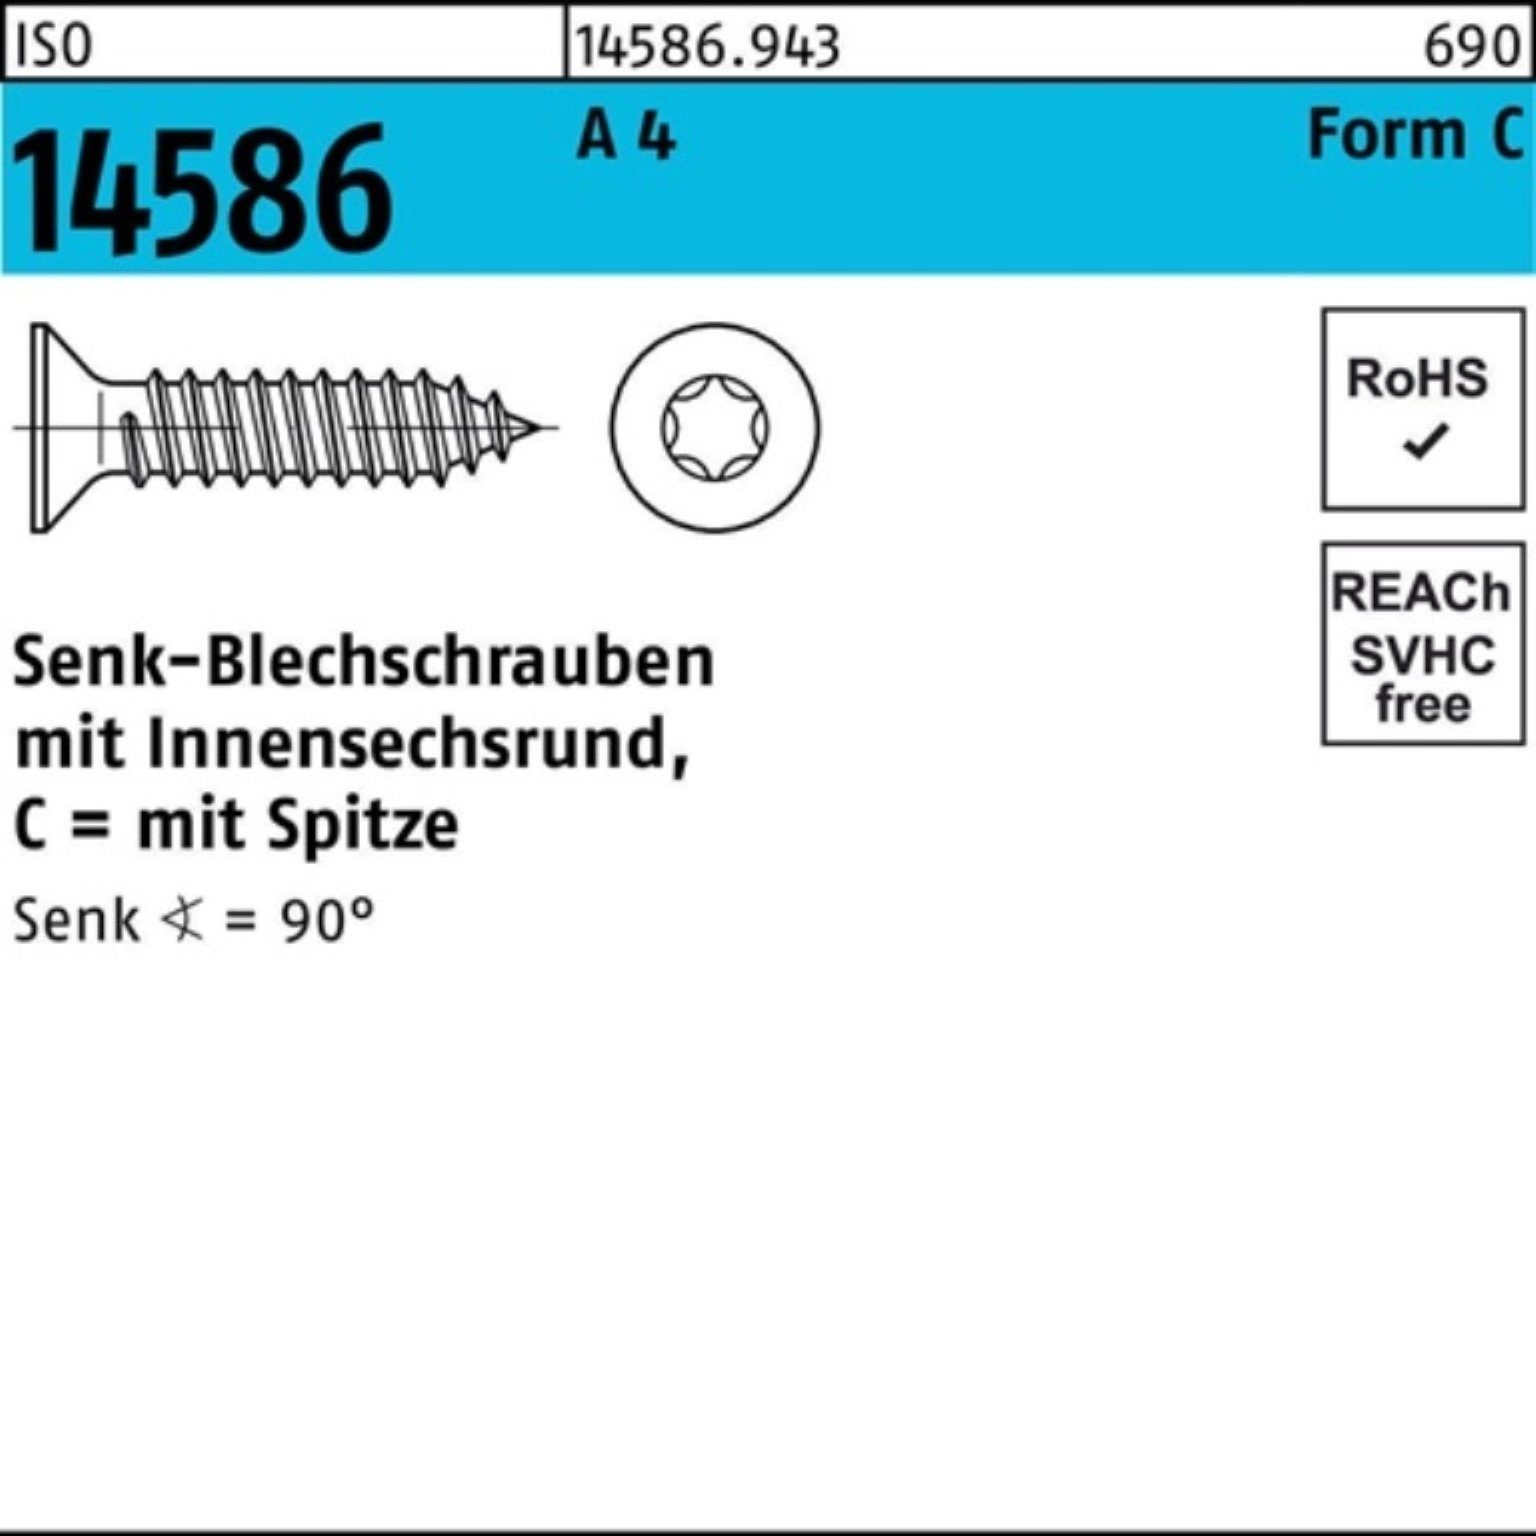 Schraube 14586 A Senkblechschraube 500 Reyher ISR/Spitze 50-T15 3,9x ISO Pack 4 500er